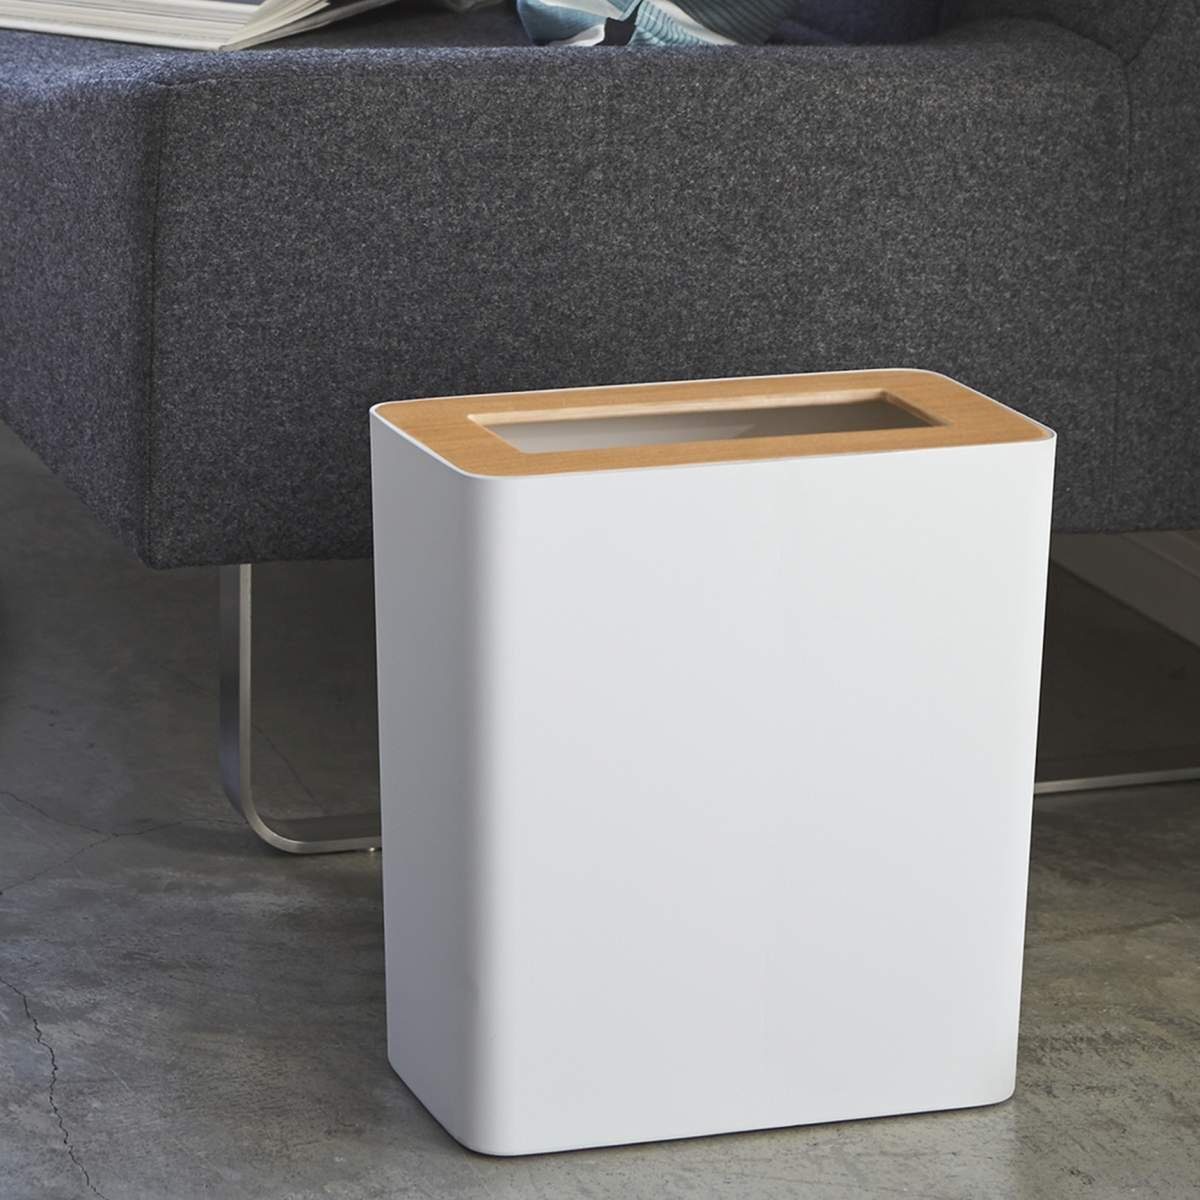 Yamazaki Papierkorb Rin, Mülleimer, klein und minimalistisch, modern, eckig, nur 30cm hoch weiß